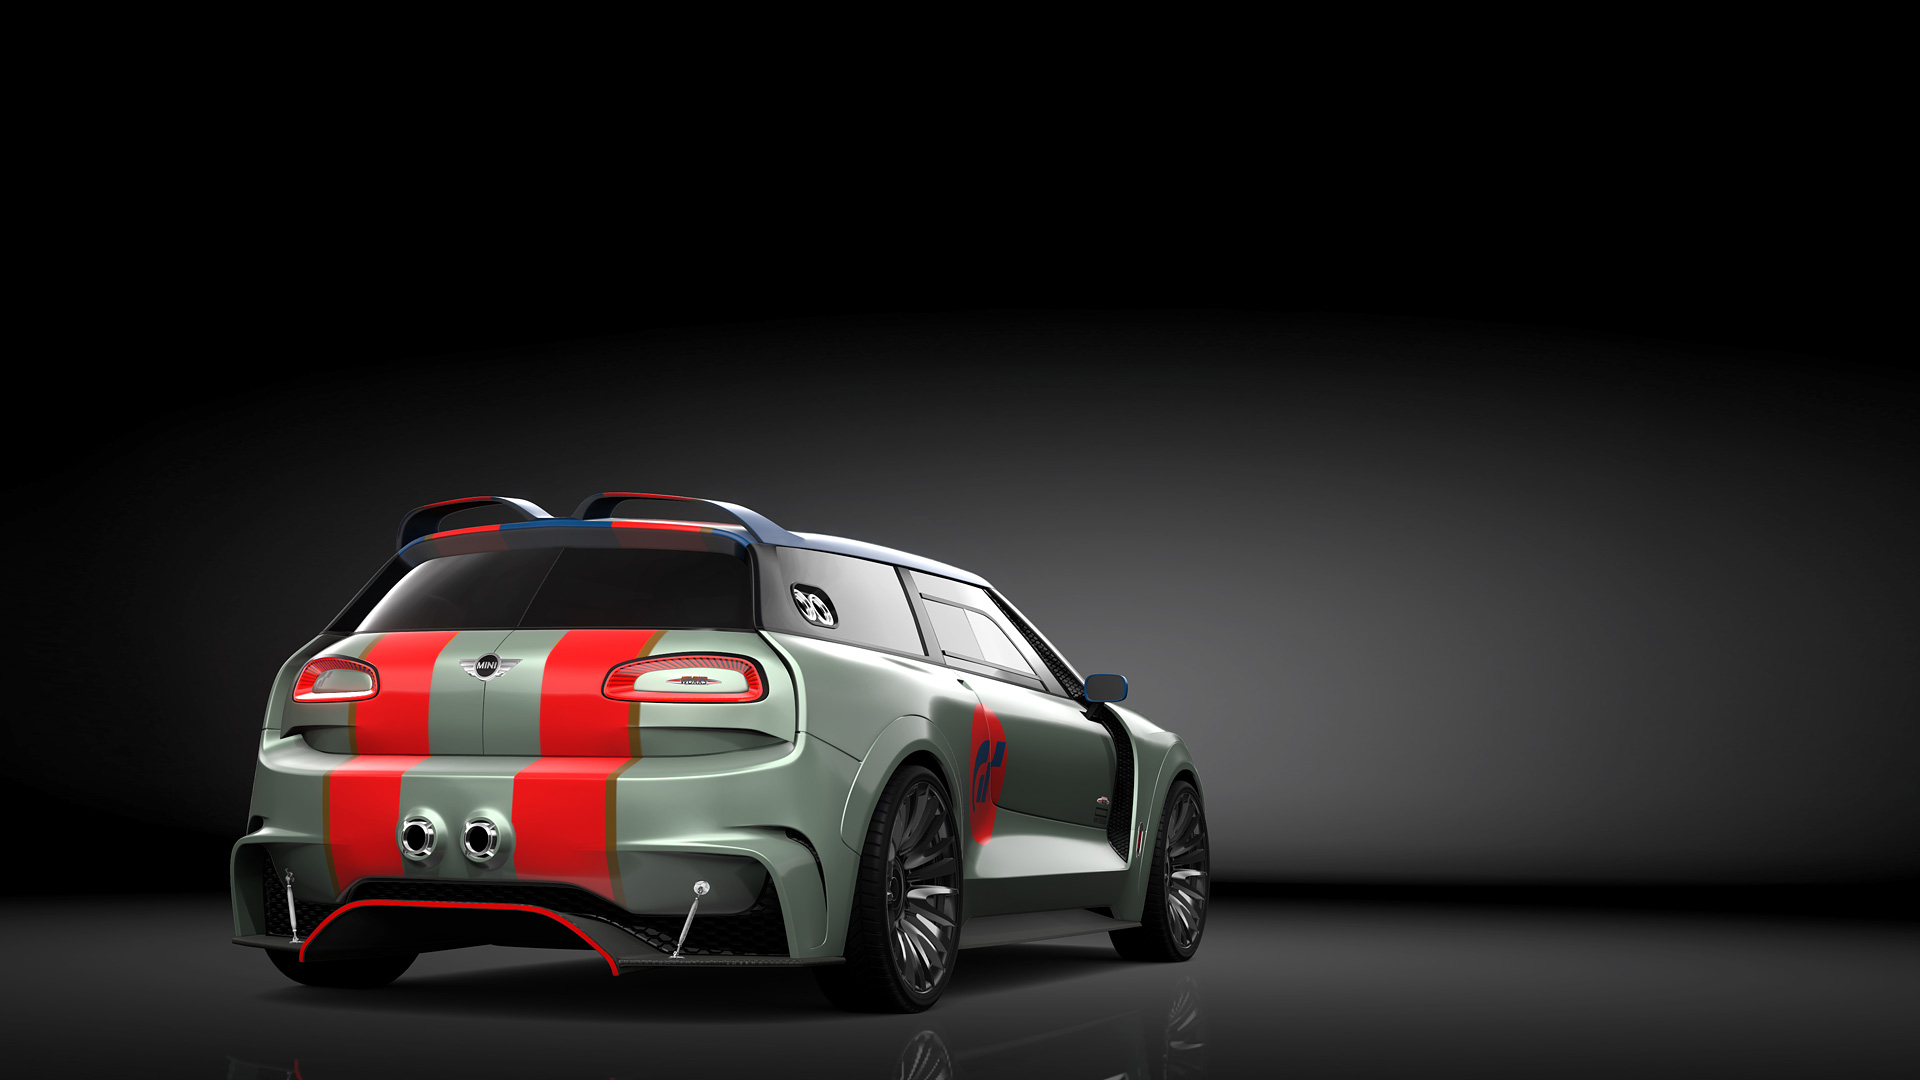 MINI Clubman Vision Gran Turismo Concept (2015)